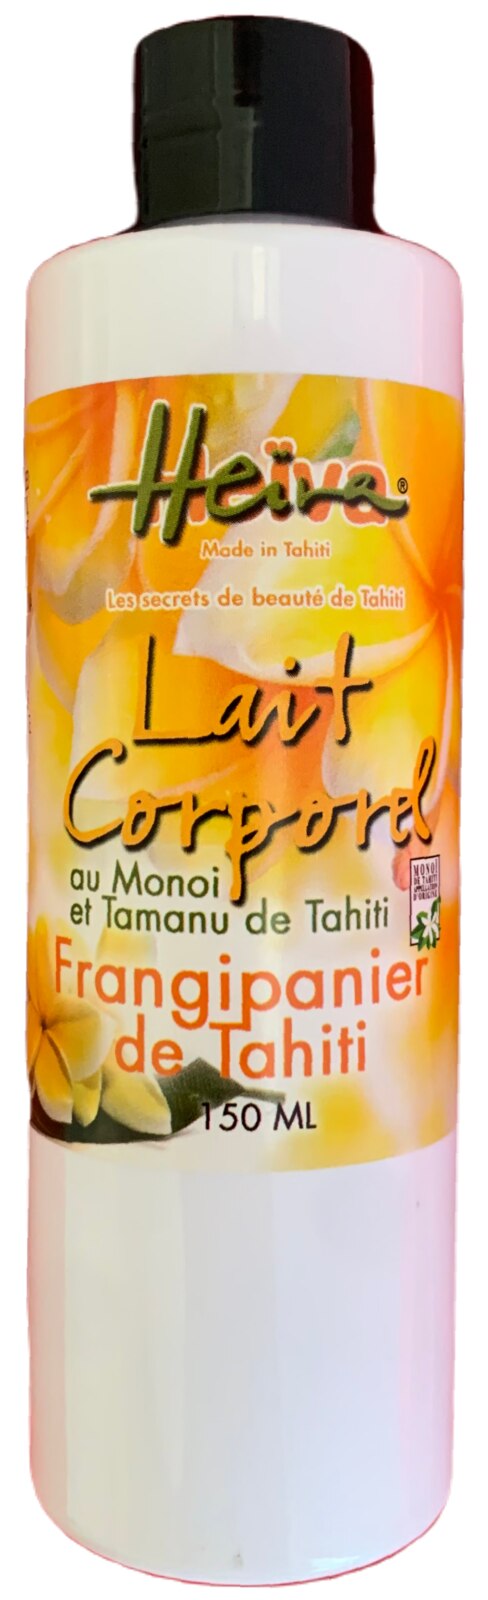 Lait Corporel au Monoi de Tahiti - Frangipanier